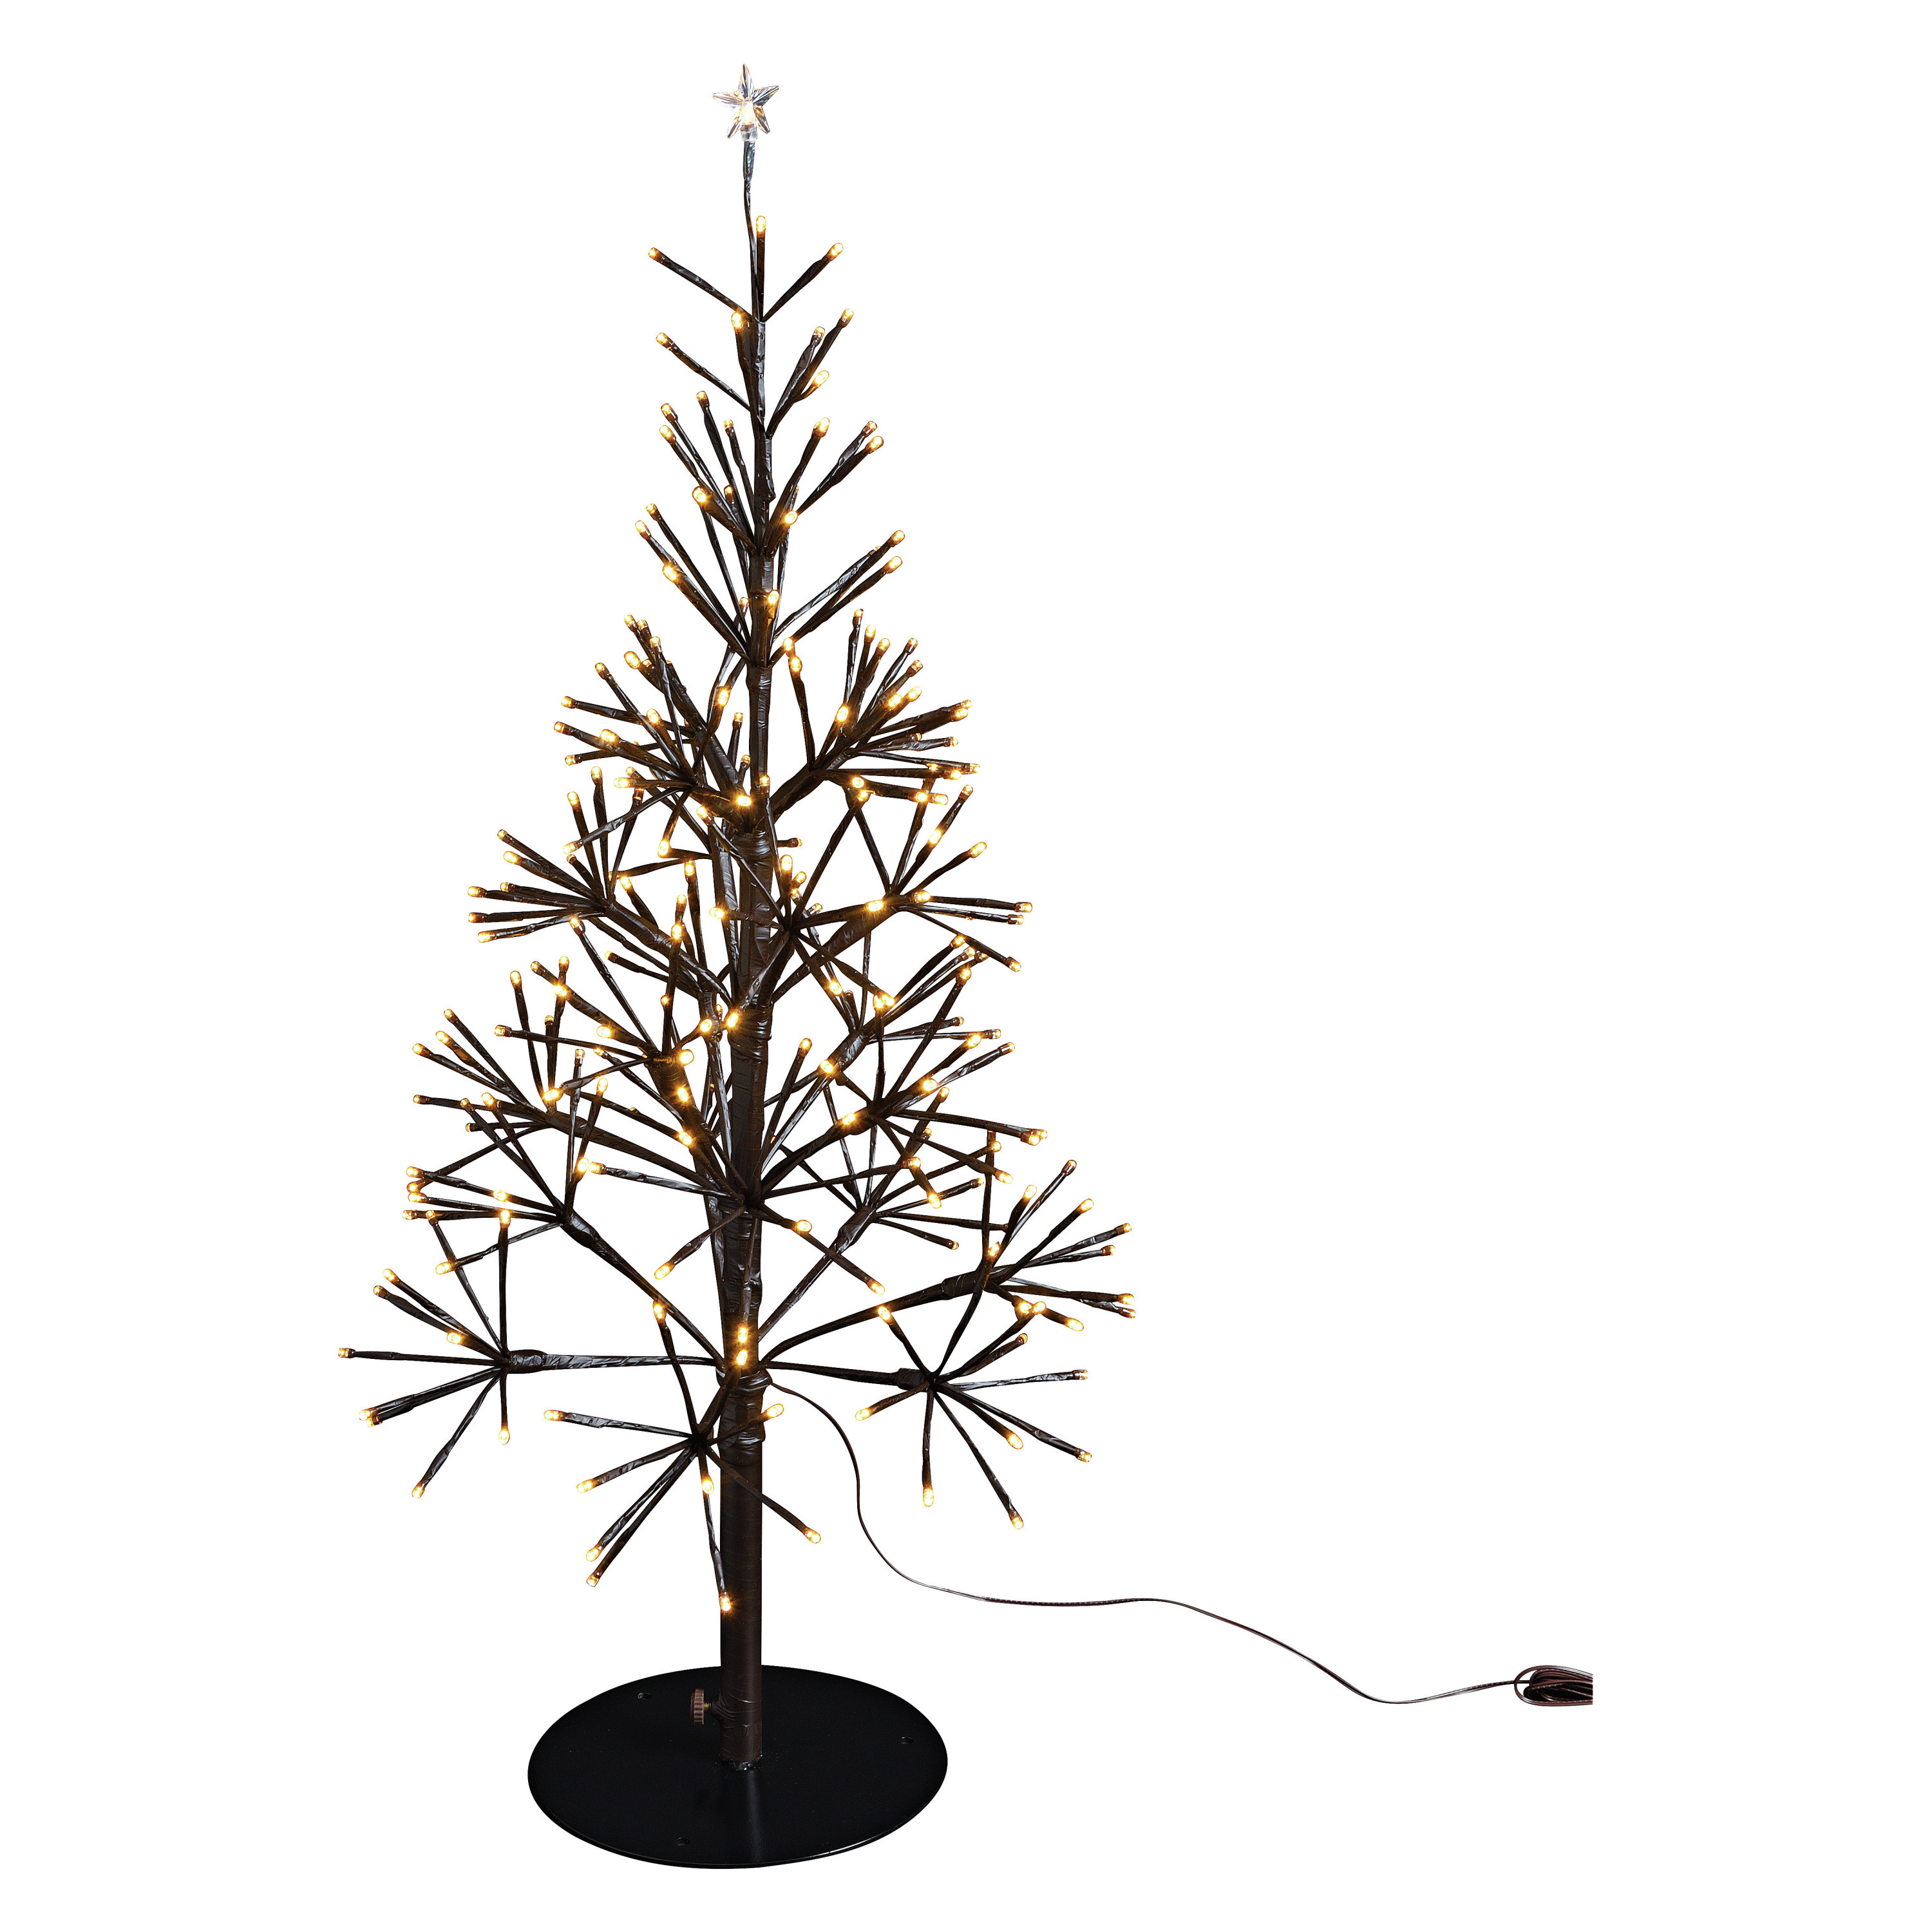 Verlichte figuren bruine lichtboom/kunststof boom/kerstboom met 380 led lichtjes 108 cm